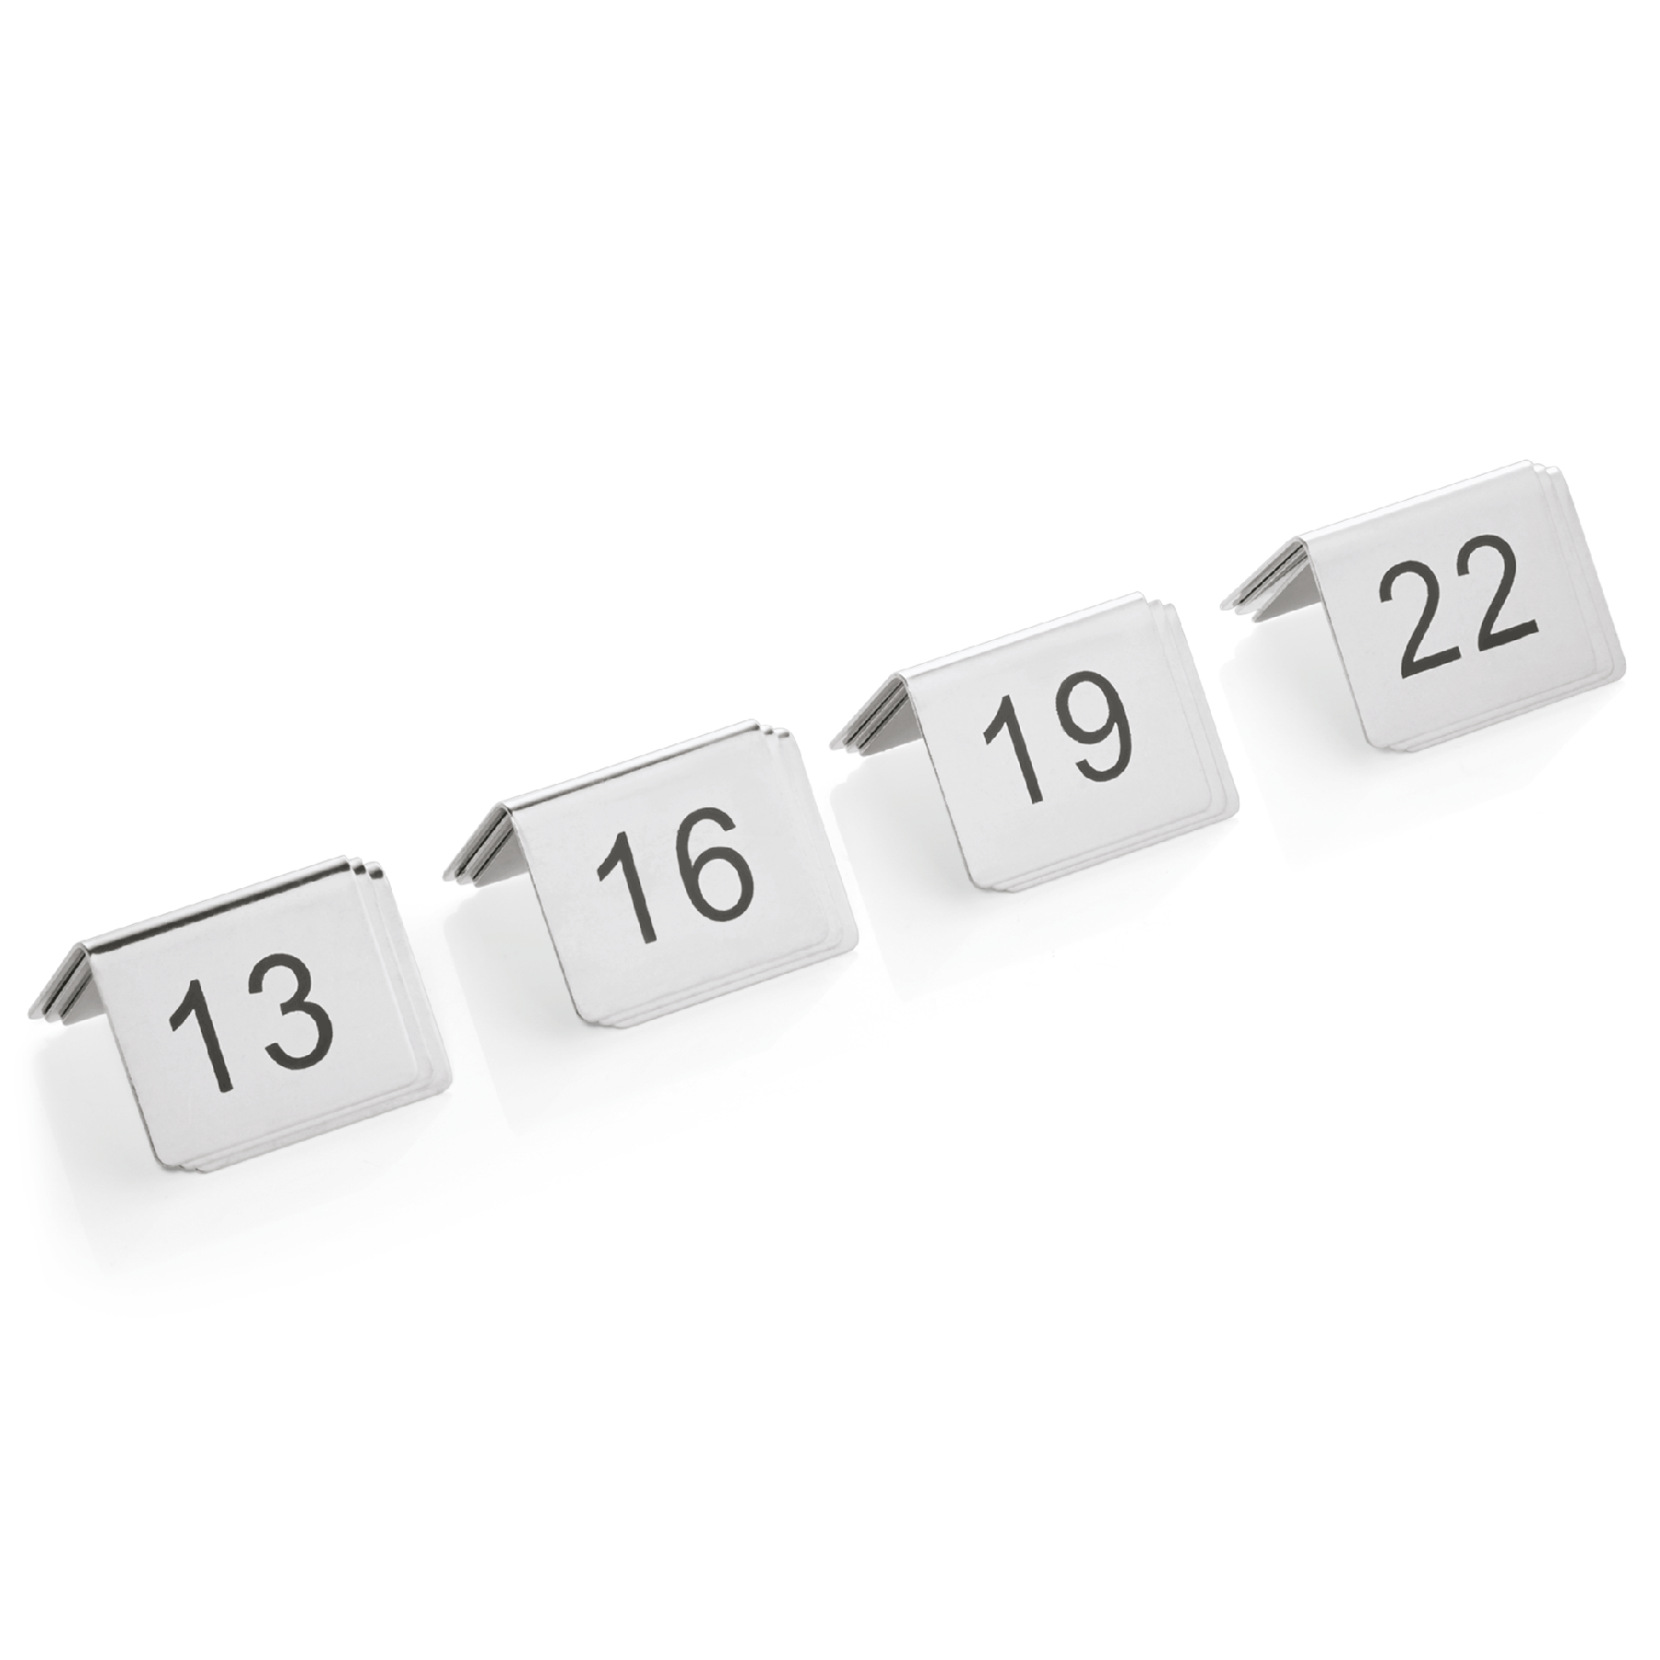 Tischnummernschild Set, 12-teilig, 13-24, Chromnickelstahl